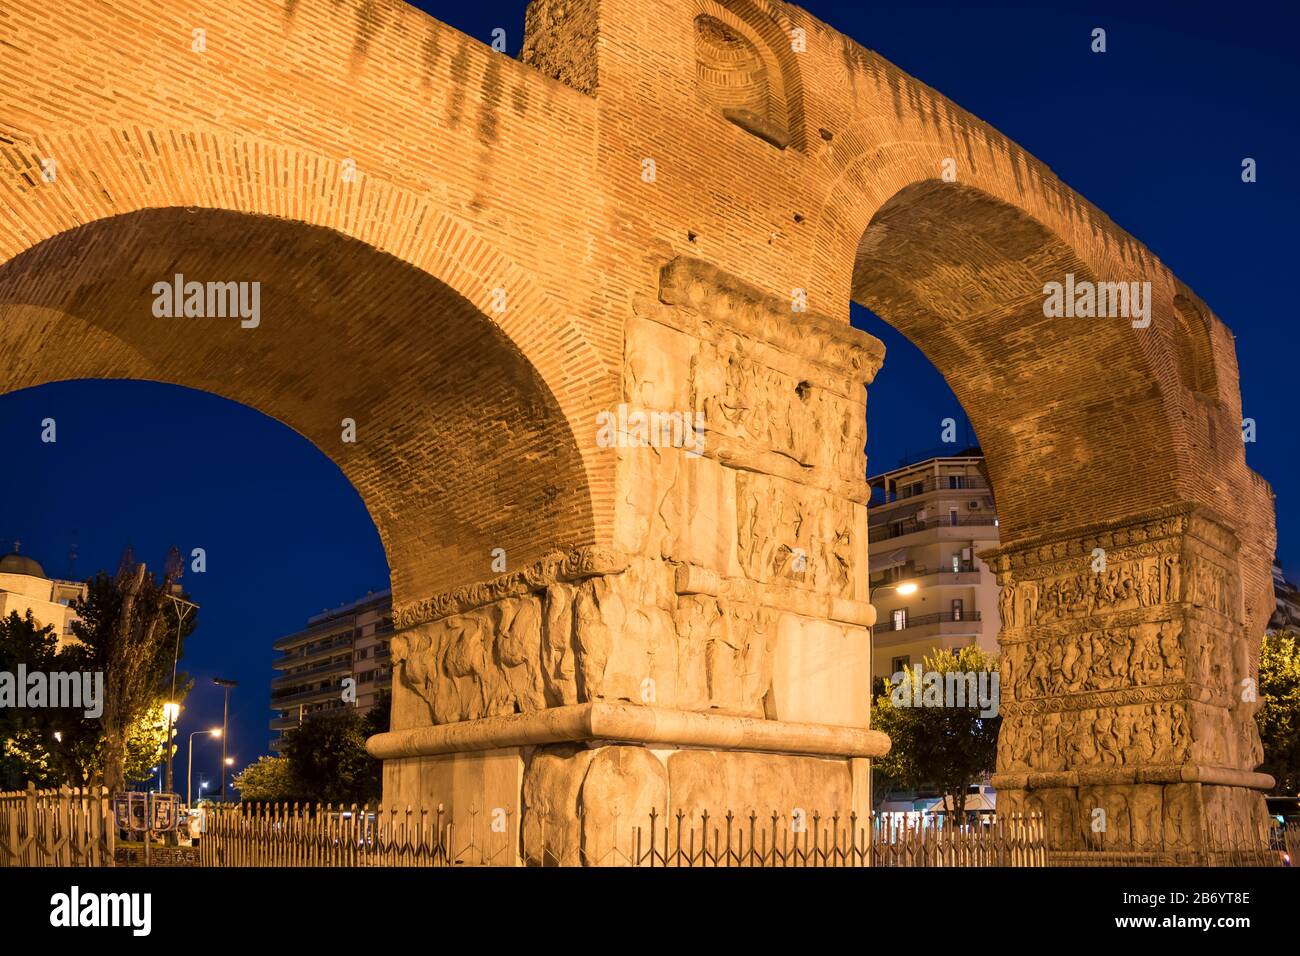 Bogen von Galerius und Rotunda in der Stadt Saloniki, Griechenland. Altes Denkmal aus dem römischen Reich. Stockfoto